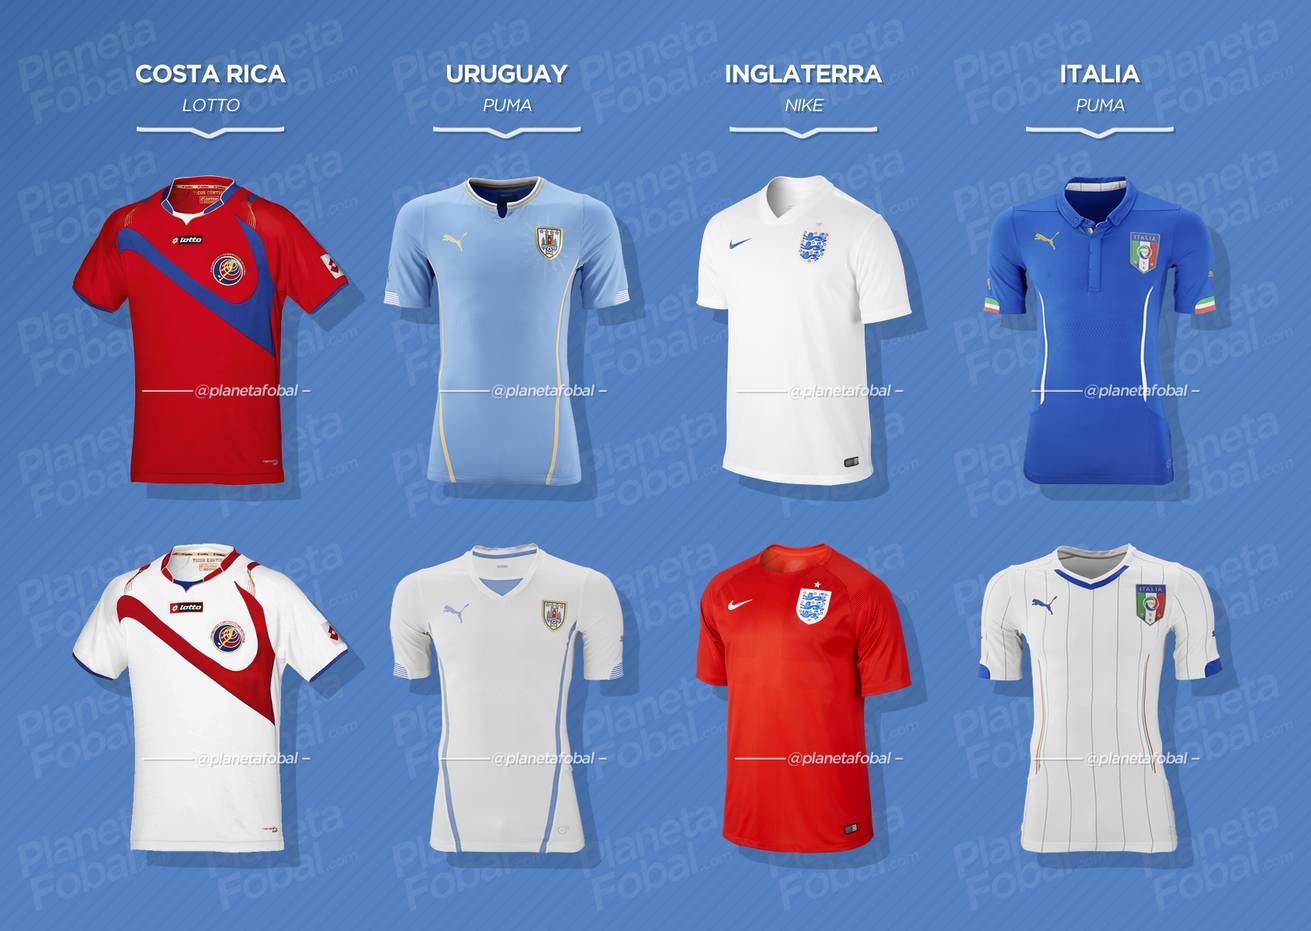 Grupo D | Camisetas del Mundial 2014